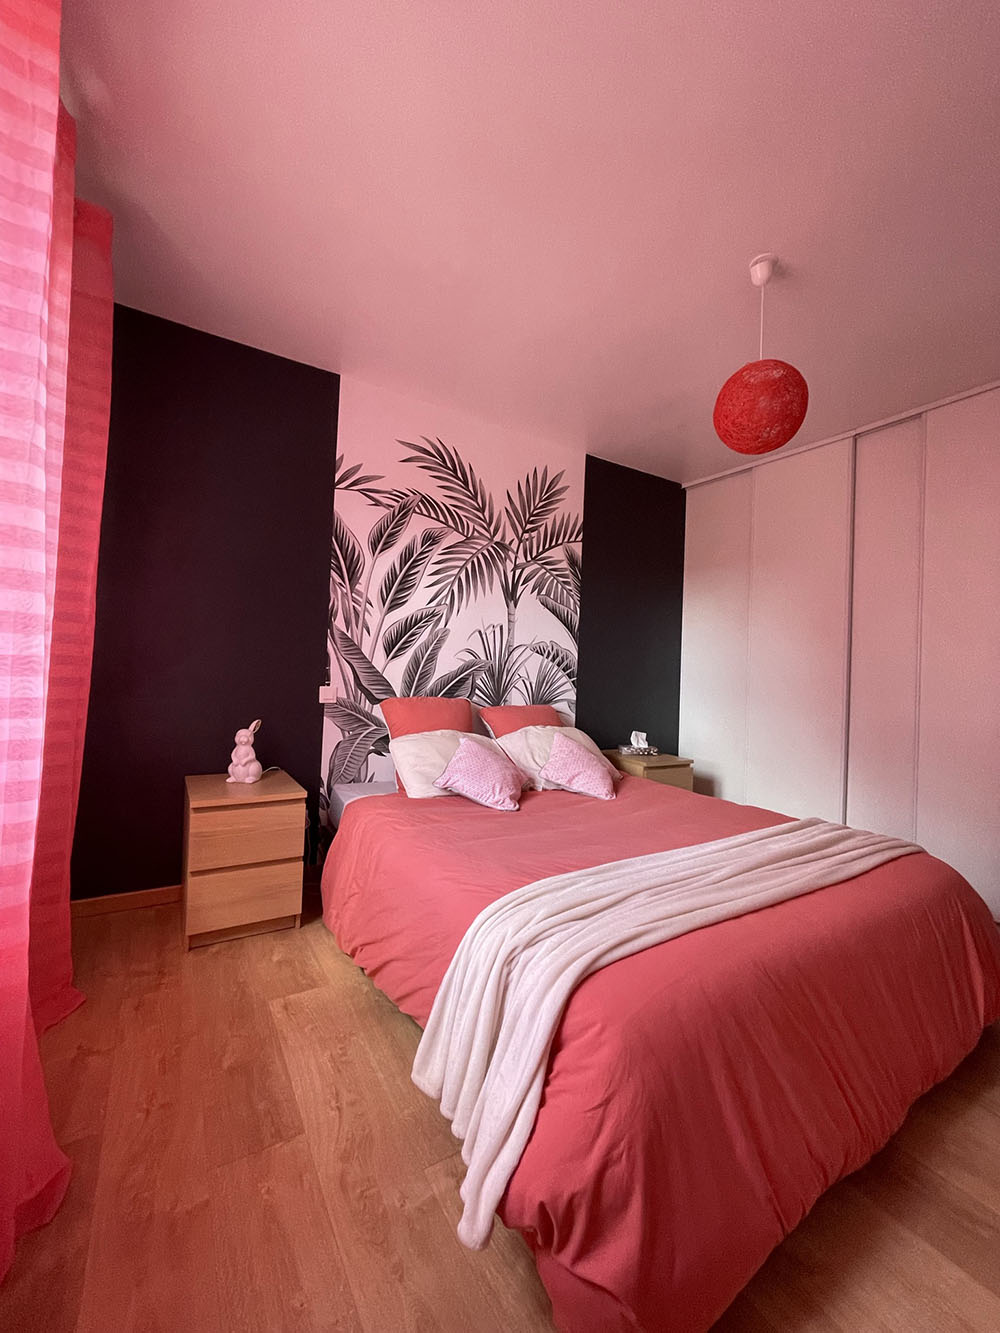 jolie chambre rose avec papier peint végétal